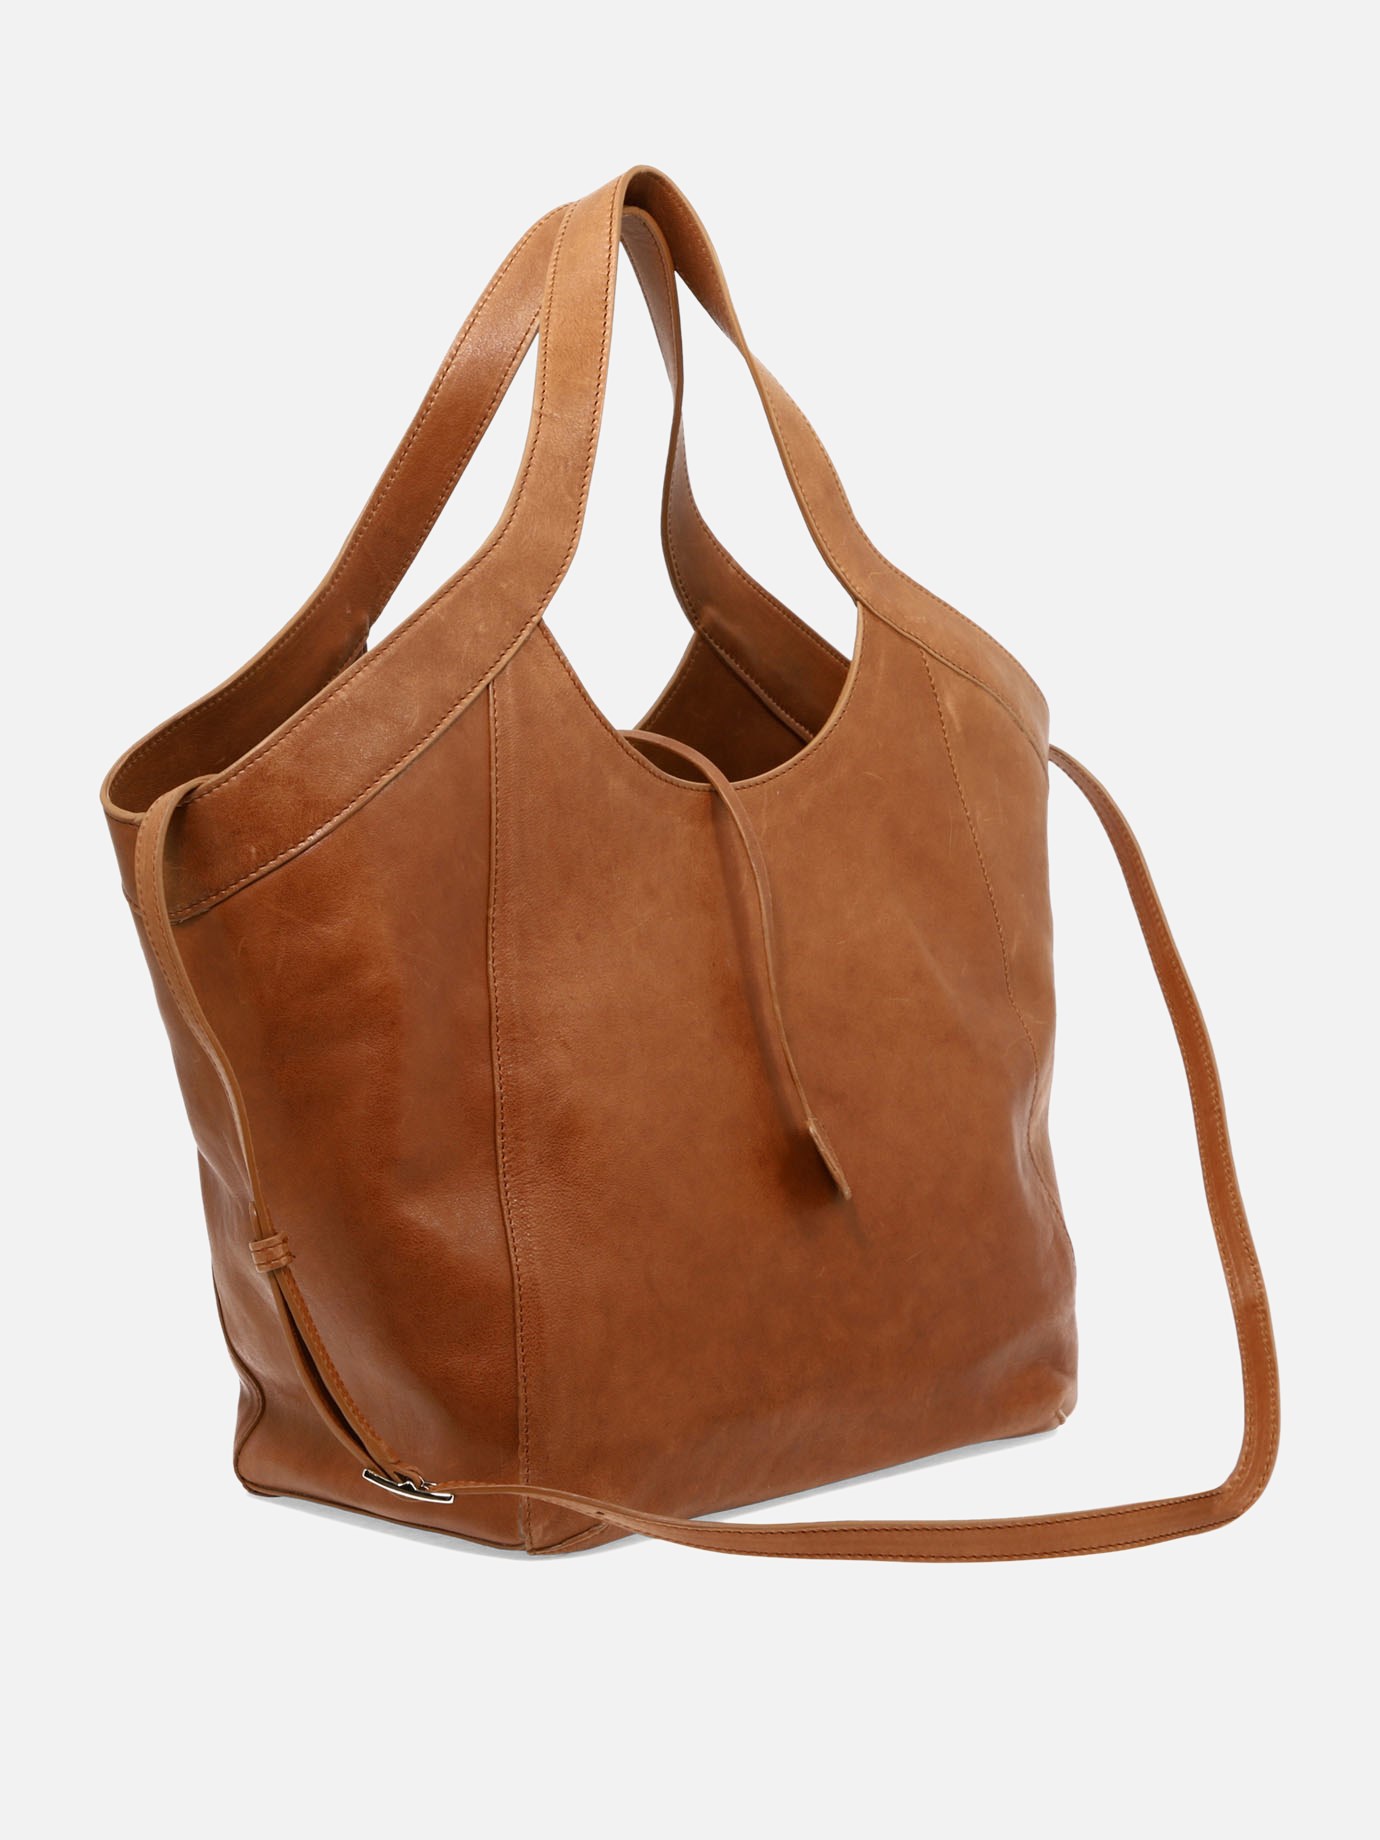  Lisa  shoulder bag by Amma Mode